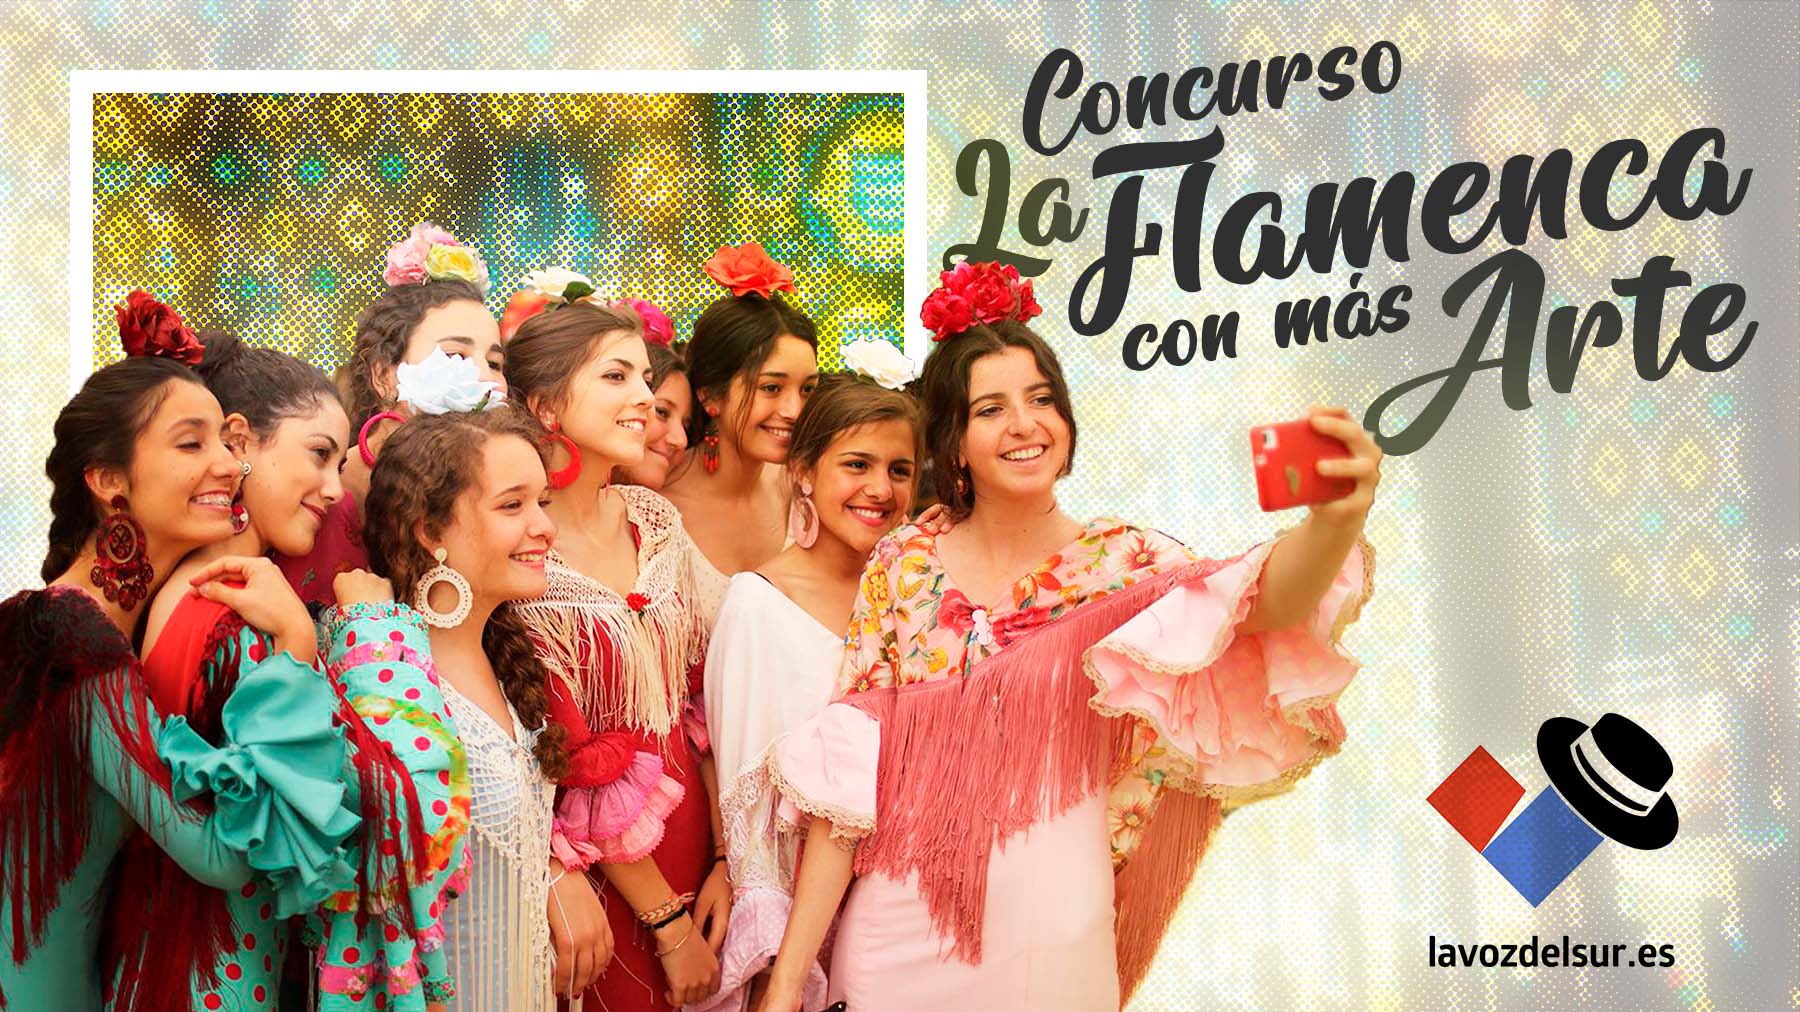 Concurso 'La Flamenca con Más Arte' de la Feria del Caballo.